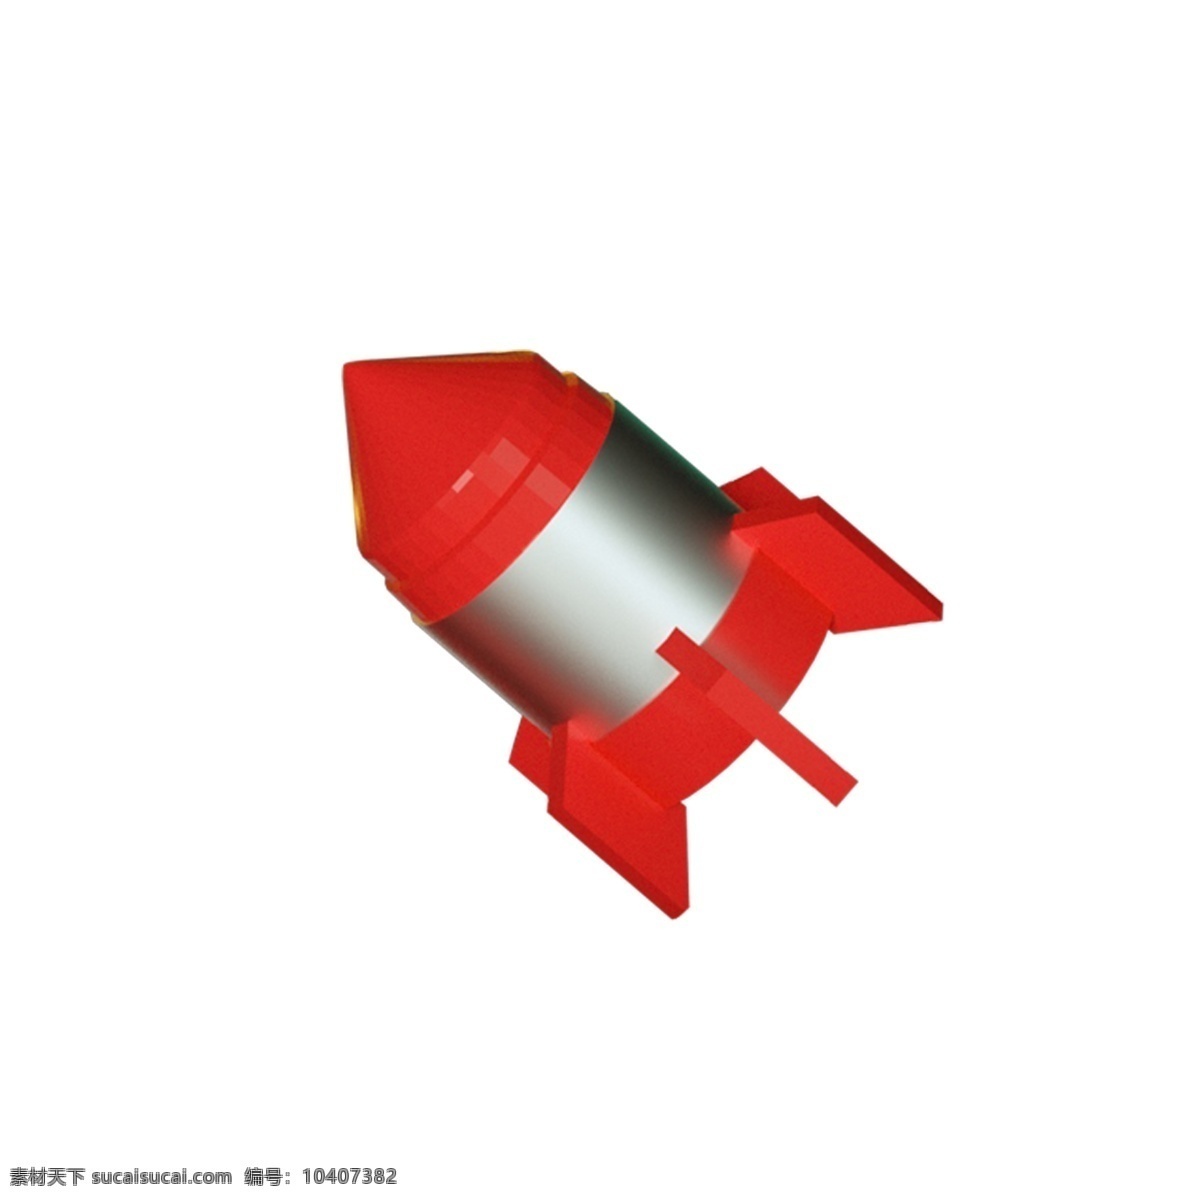 红色 立体 火箭 免 抠 图 武器 太空武器 卡通图案 卡通插画 红色导弹 红通通 红色立体火箭 免抠图